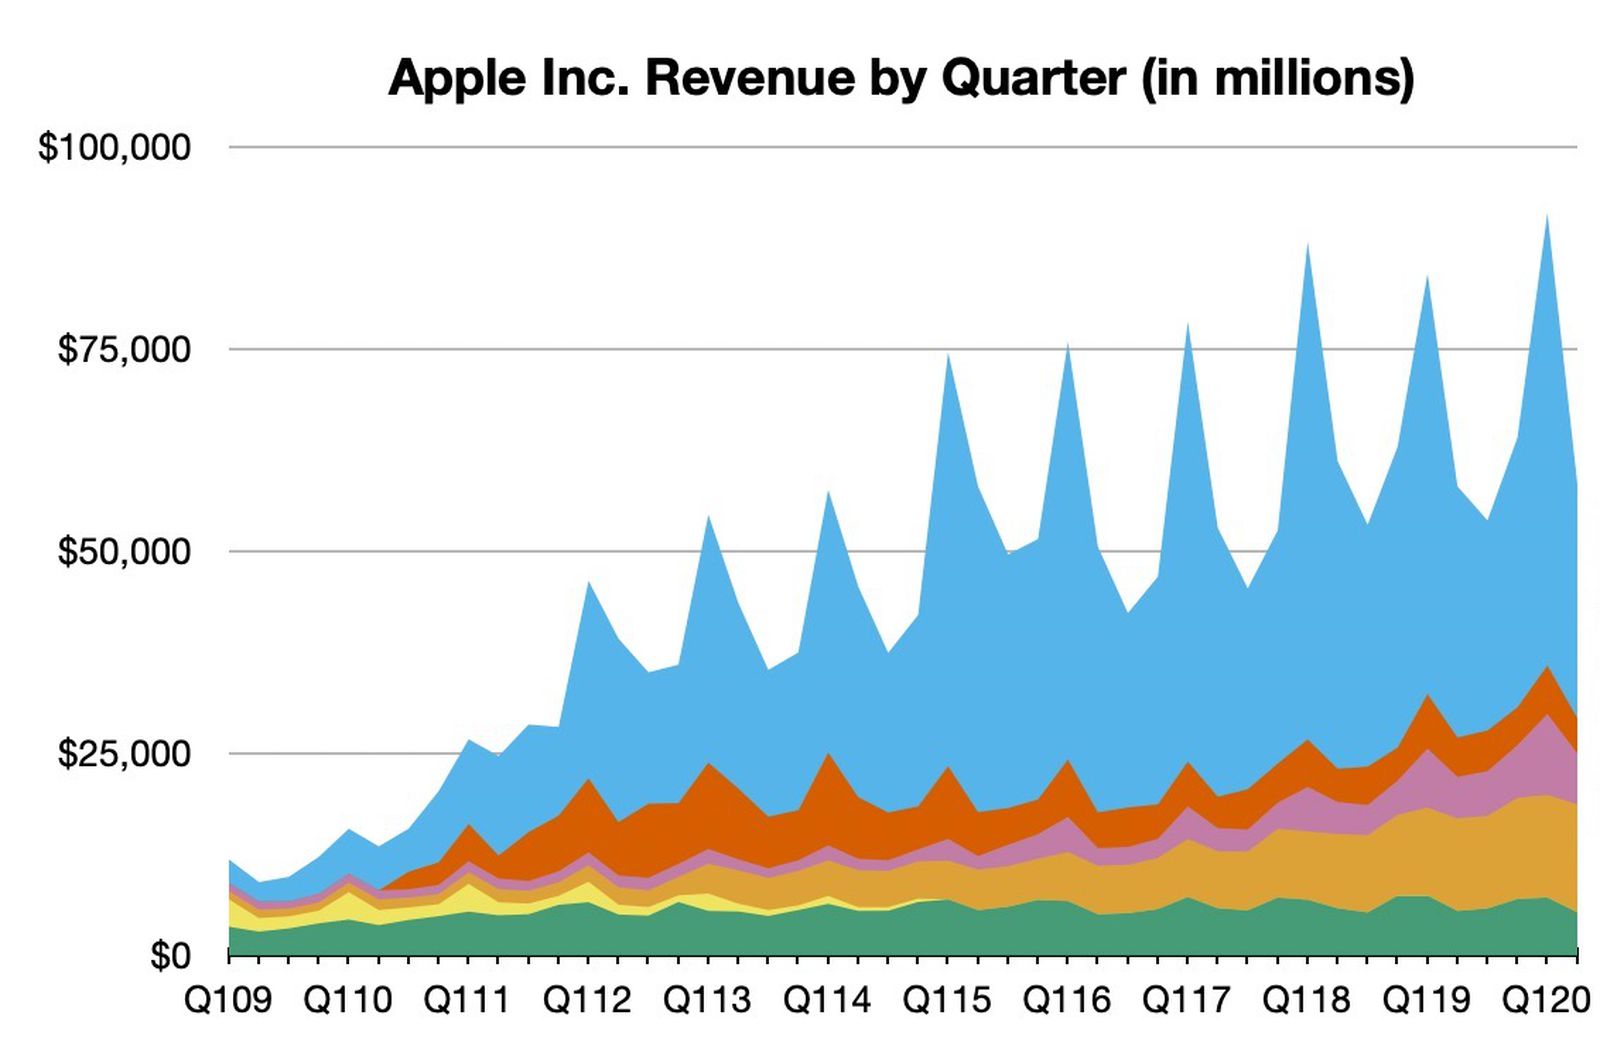 Apple Reports 2Q 2020 Results 11.2B Profit on 58.3B Revenue, All